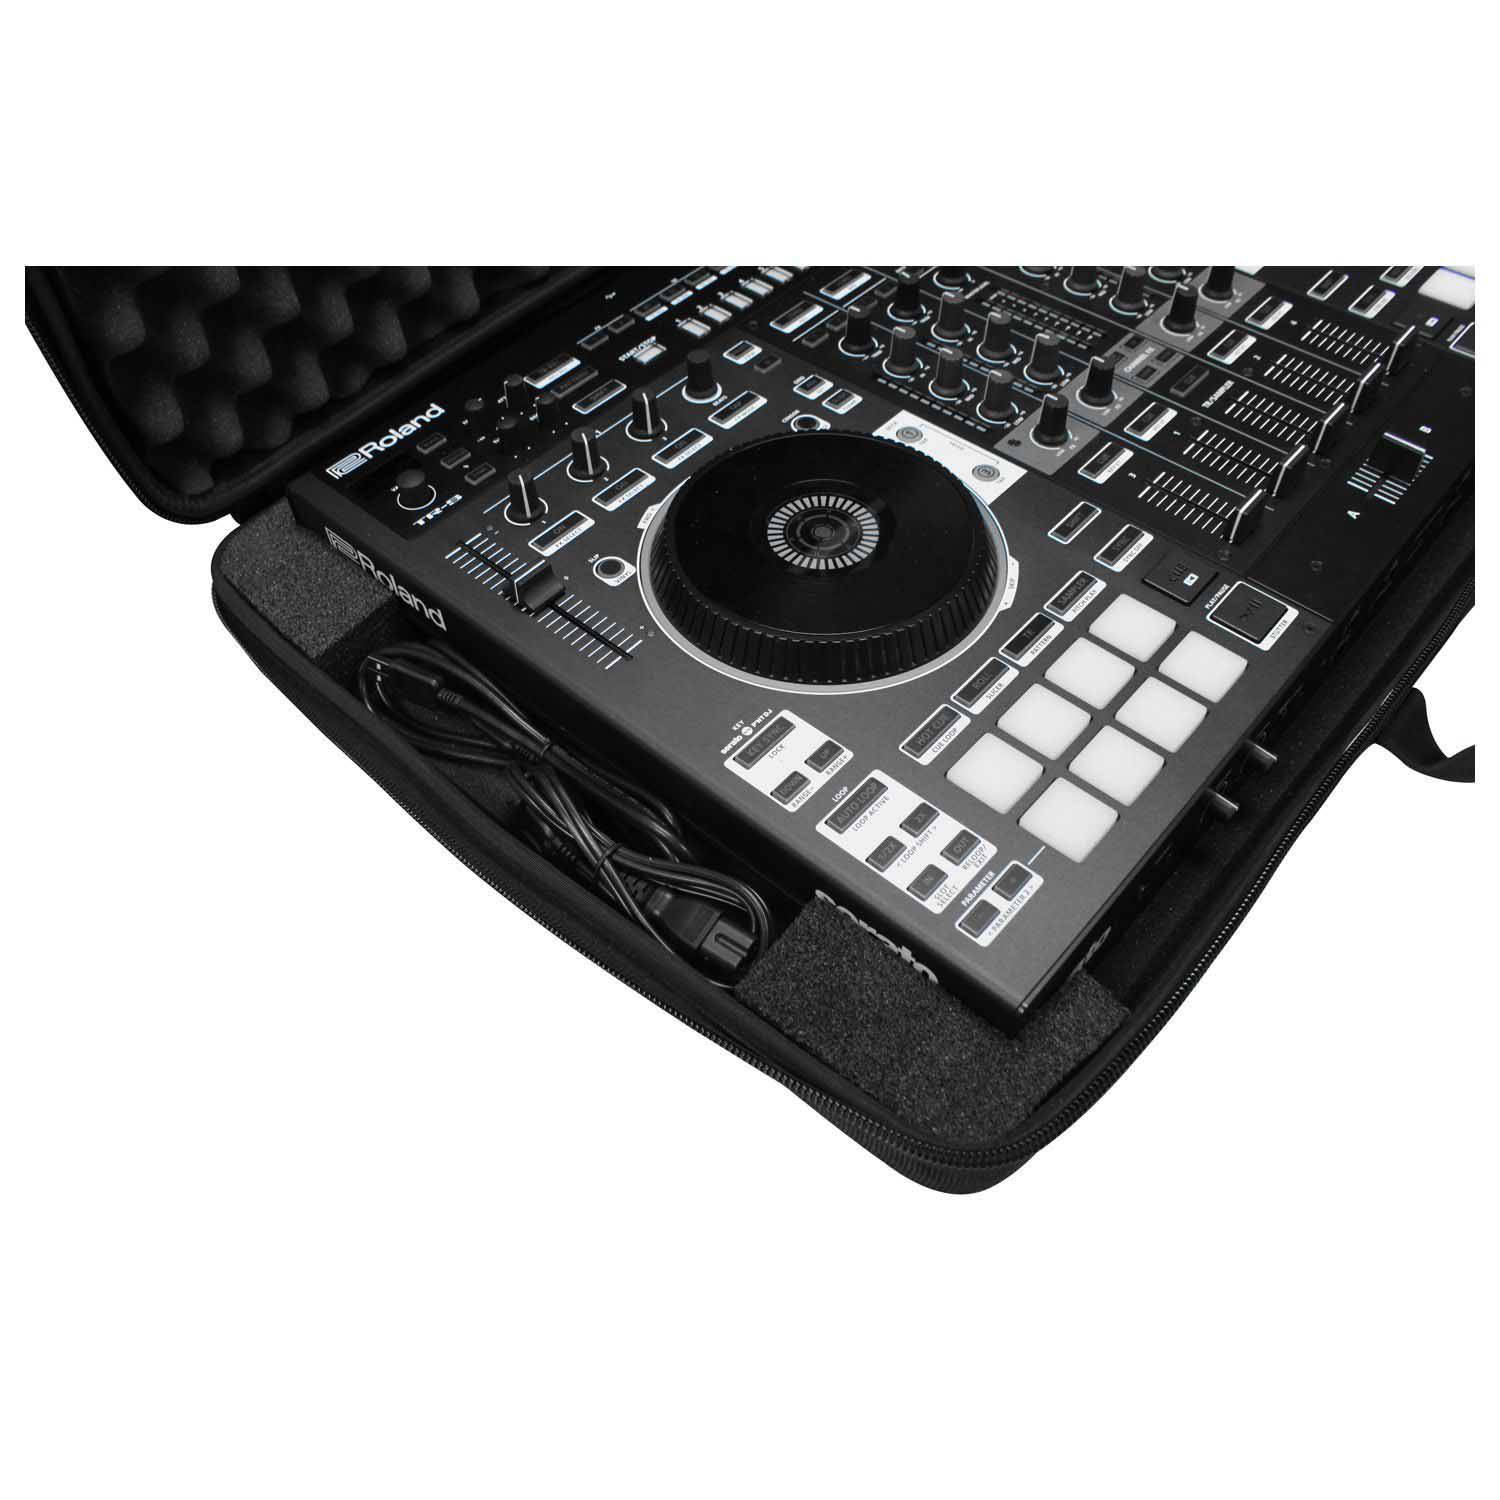 Odyssey BMSLRODJ808 EVA Molded Carrying Bag For Roland DJ-808 DJ Controller - Hollywood DJ